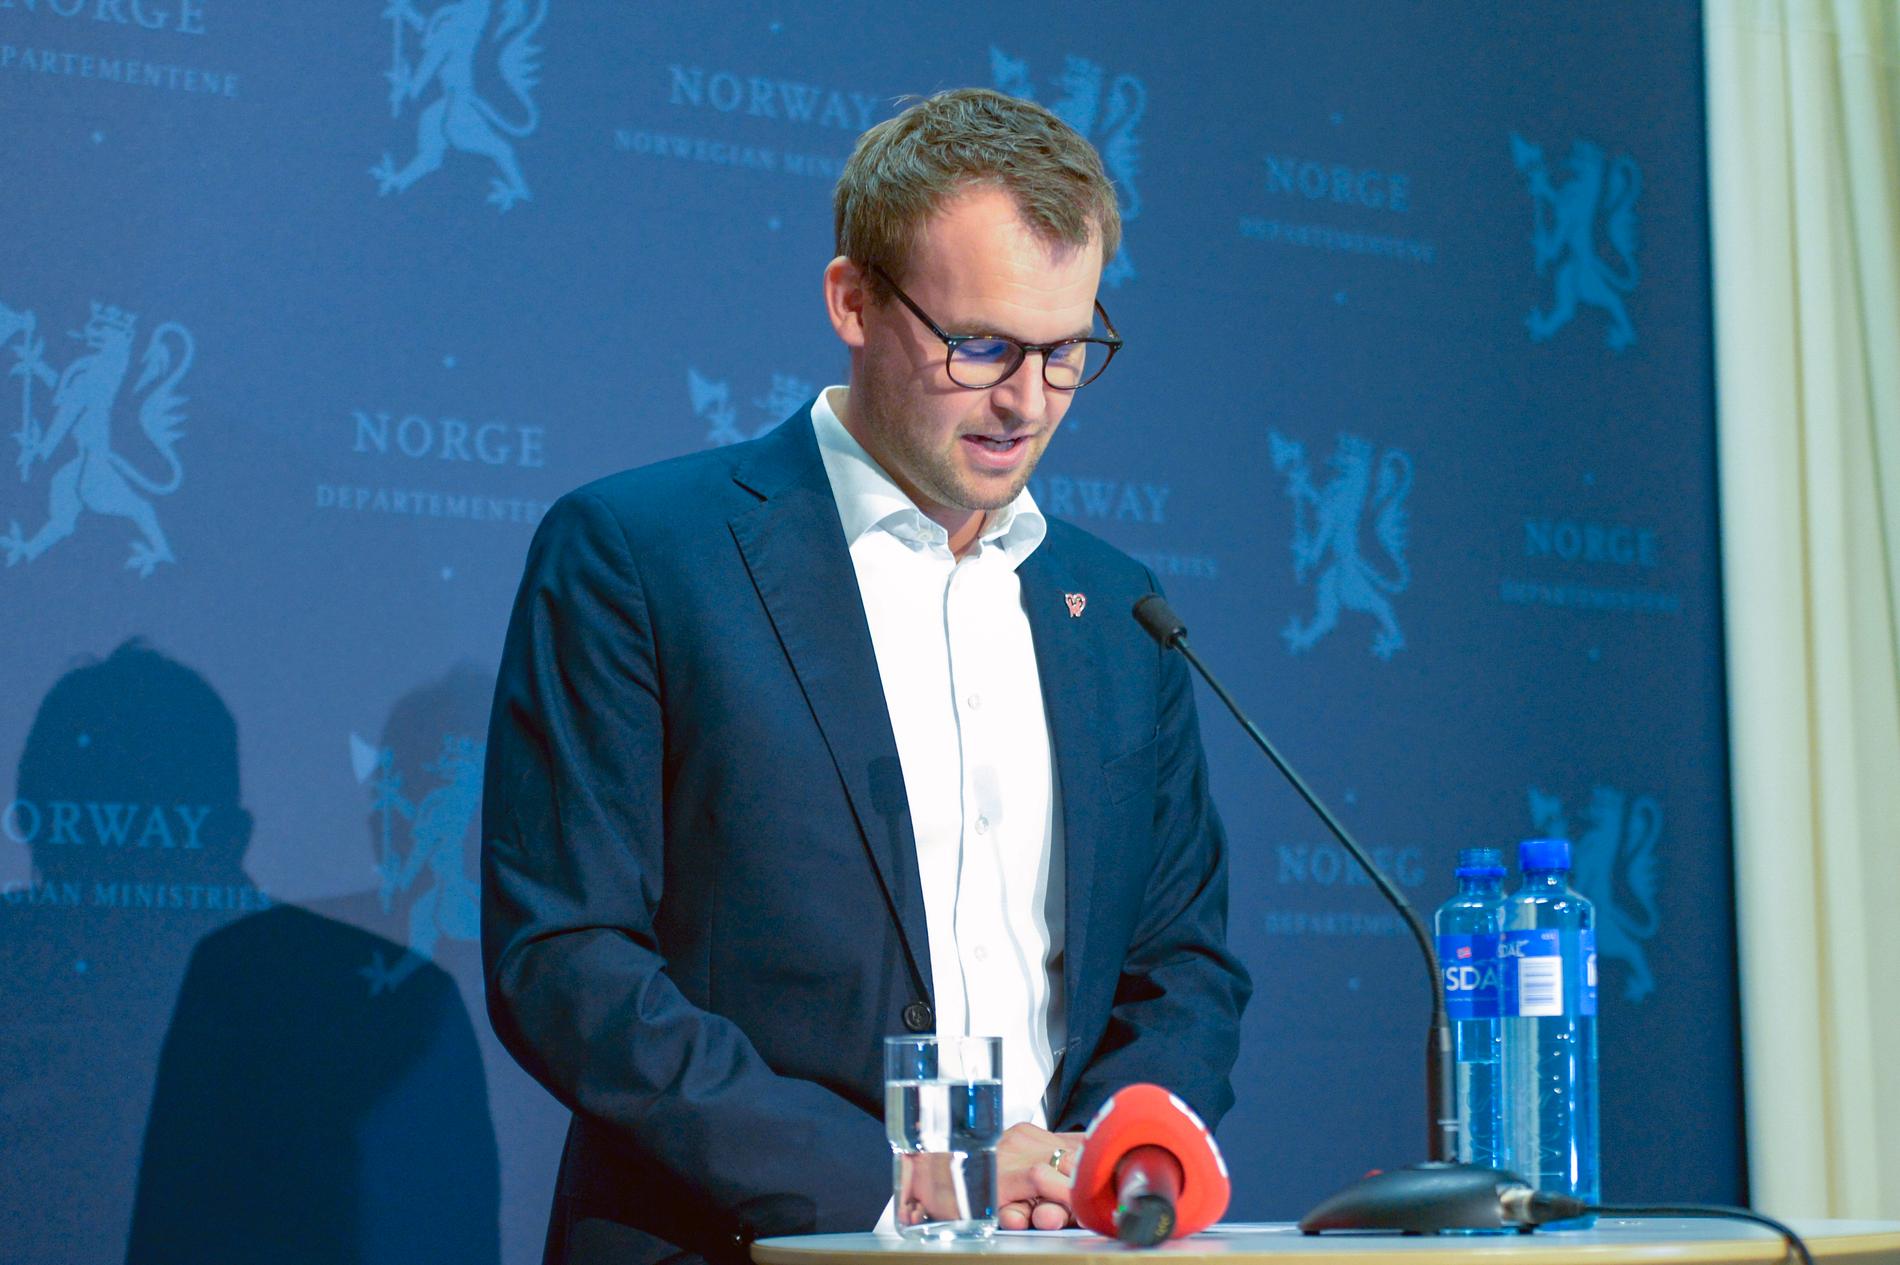 Kjell Ingolf Ropstad meddelar att han kommer att avgå som partiledare och minister vid en pressträff på lördagen.